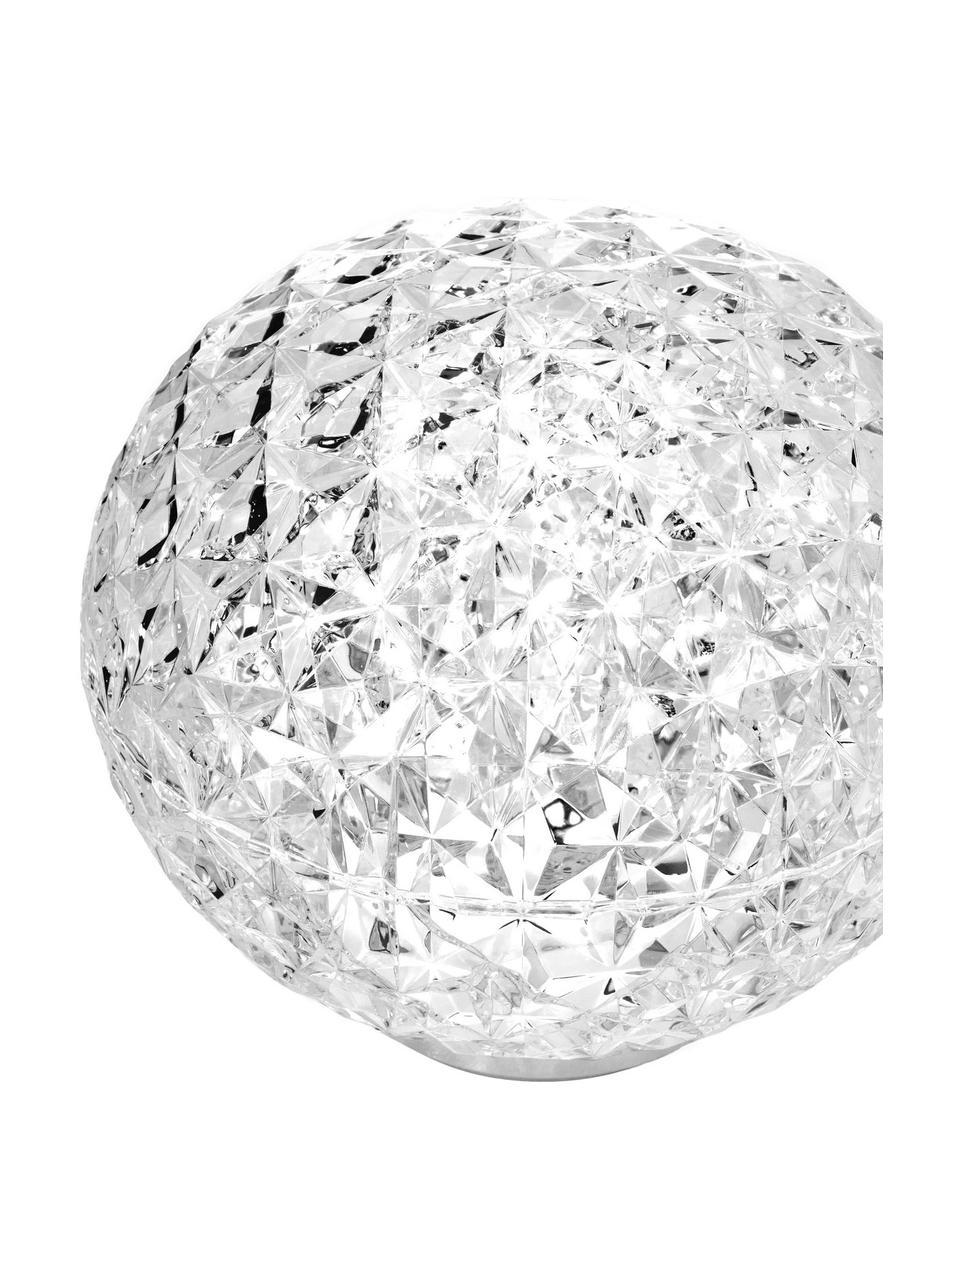 Kleine mobile LED-Tischlampe Planet, dimmbar, Lampenschirm: Durchfärbtes, transparent, Transparent, Ø 16 x H 14 cm